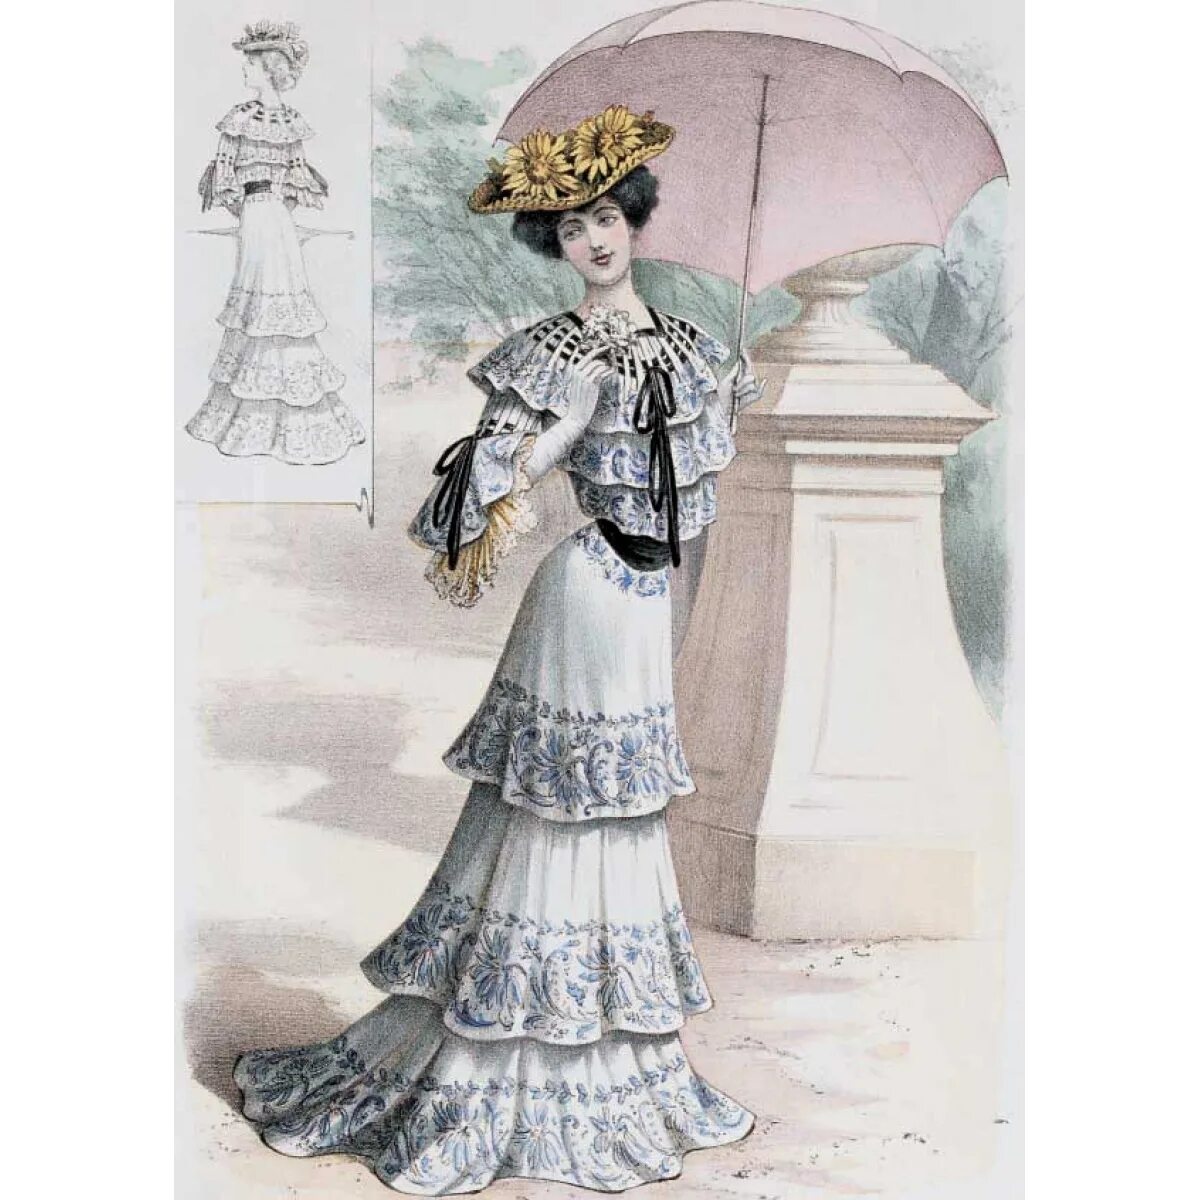 Платье Модерн 19 век. Костюм в стиле Модерн. Стиль Модерн в одежде 19 века. Платье в стиле 1900-х.